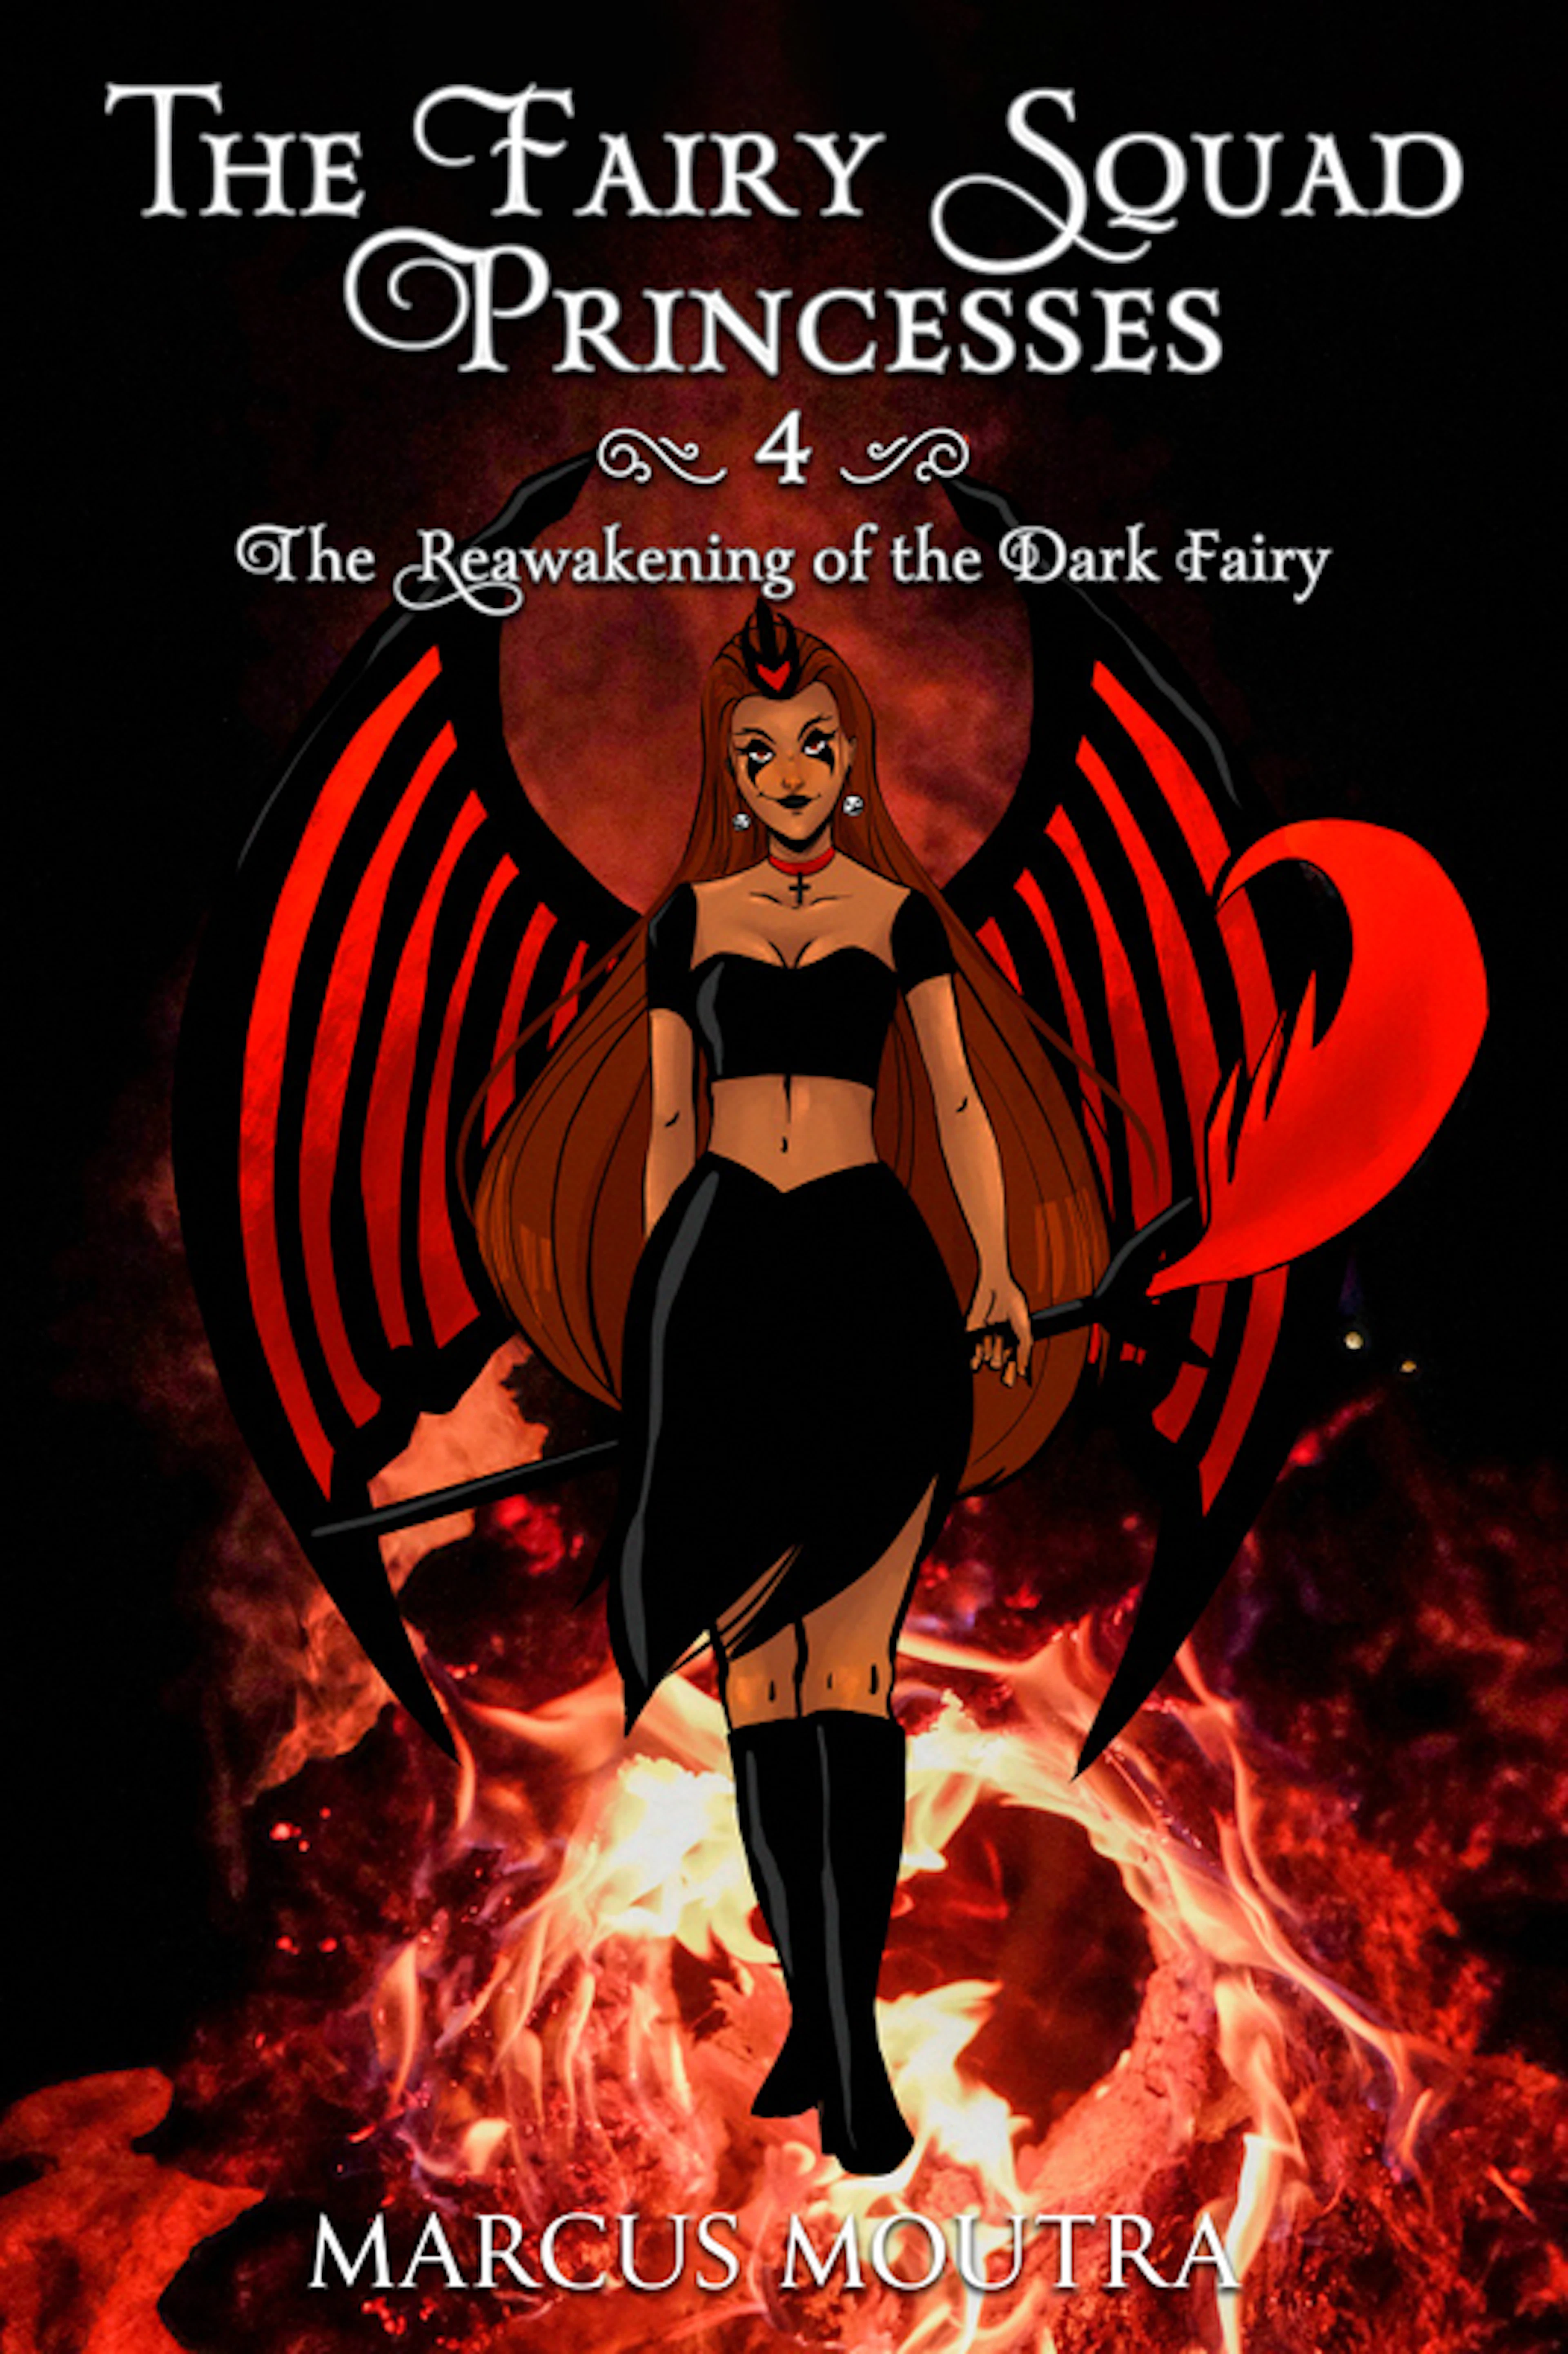 The Reawakening of the Dark Fairy (B4)